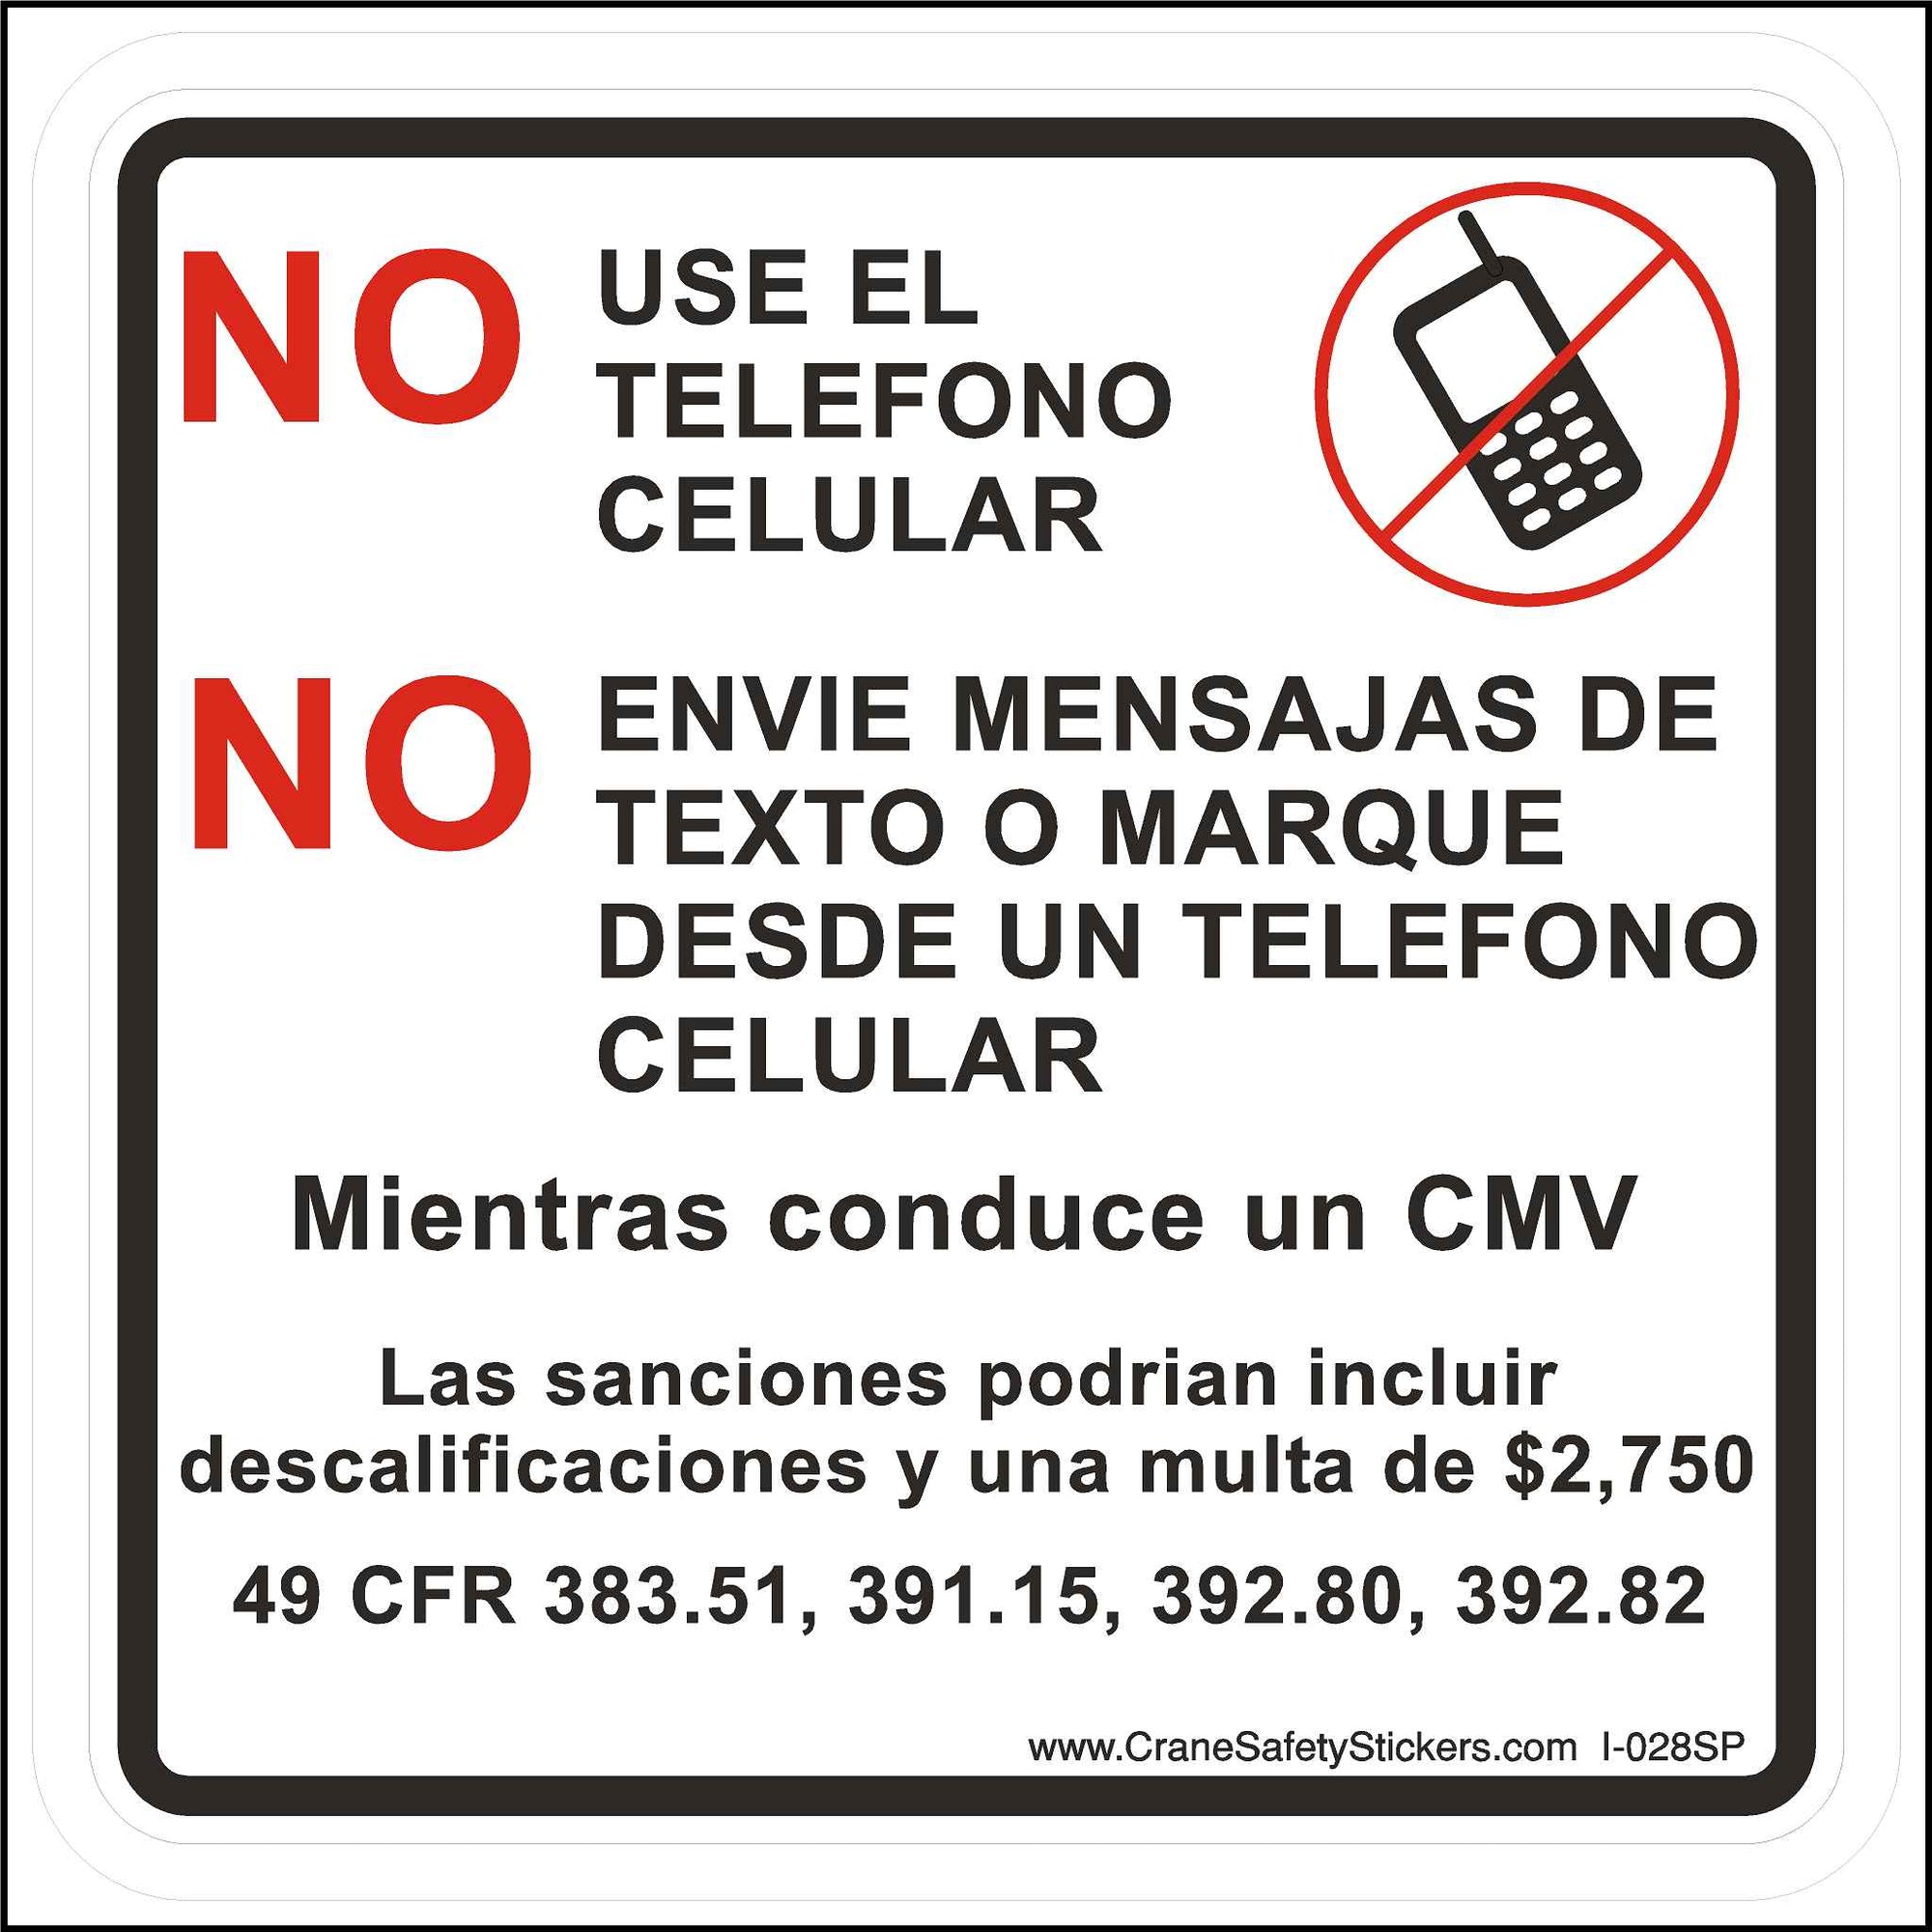 Spanish No Cell Phones While Driving a CMV Commercial Motor Vehicle Label Printed in Spanish With. NO USE EL TELEFONO CELULAR.  NO ENVIE MENSAJAS DE TEXTO O MARQUE DESDE UN TELEFONO CELULAR.  Mientras conduce un CMV  Las sanciones podrian incluir descalificaciones y una multa de $2,750  49 CFR 383.51, 391.15, 392.80, 392.82.